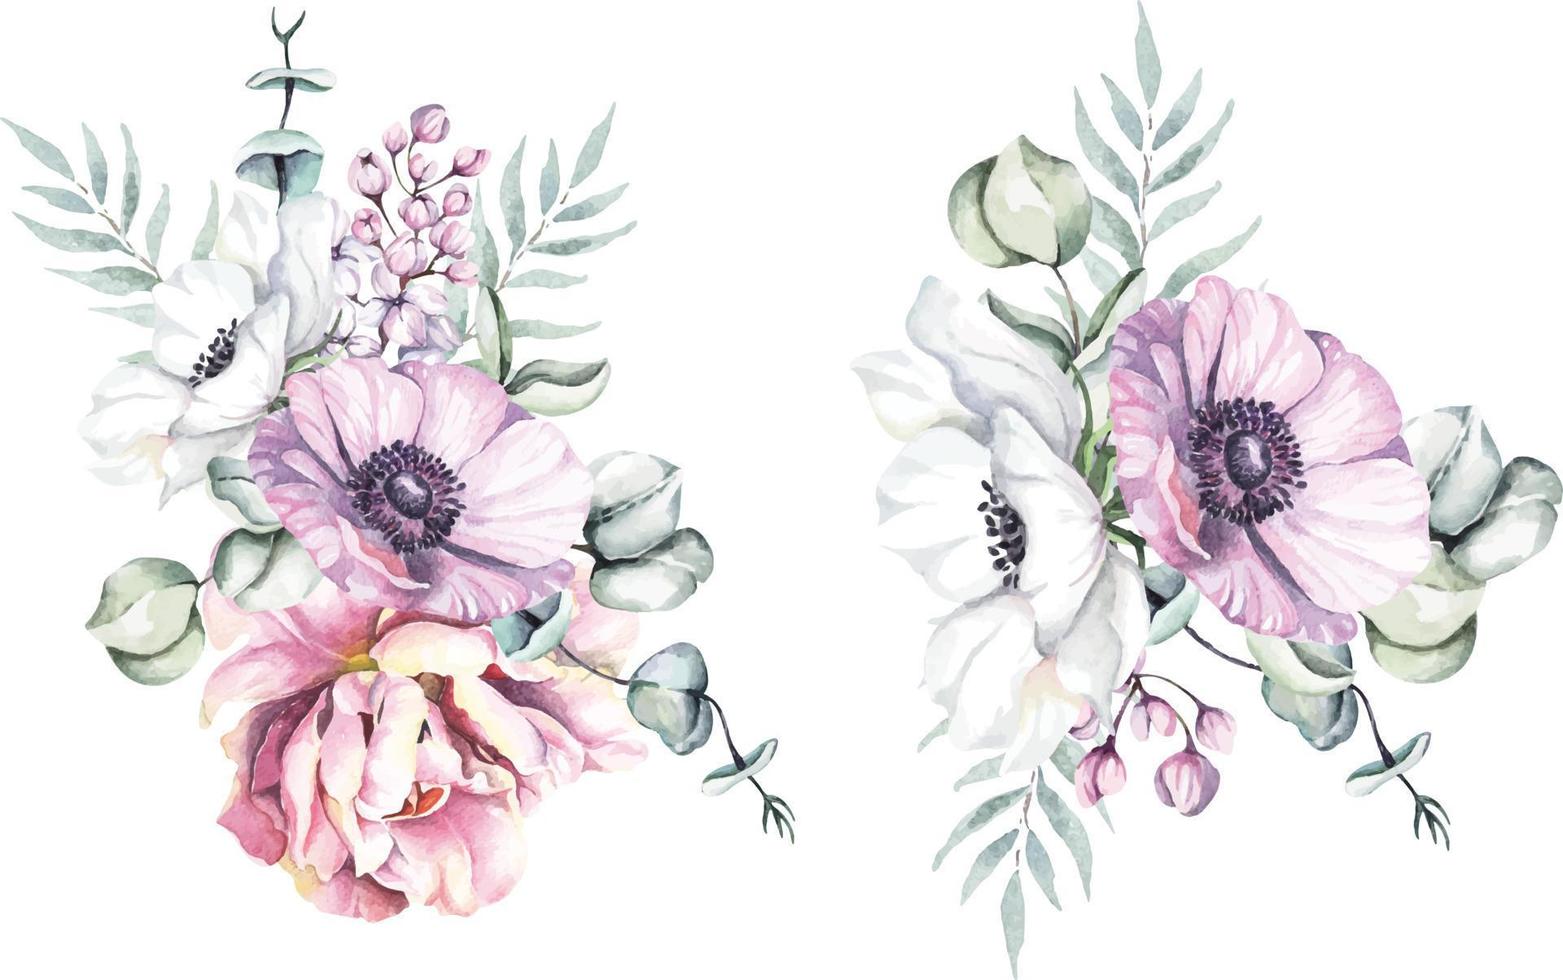 composizione di rosa del fiore dell'acquerello illustrazione floreale botanica disegnata a mano per la carta dell'invito di nozze pittura dell'anemone di fioritura del bouquet stile vintage. vettore